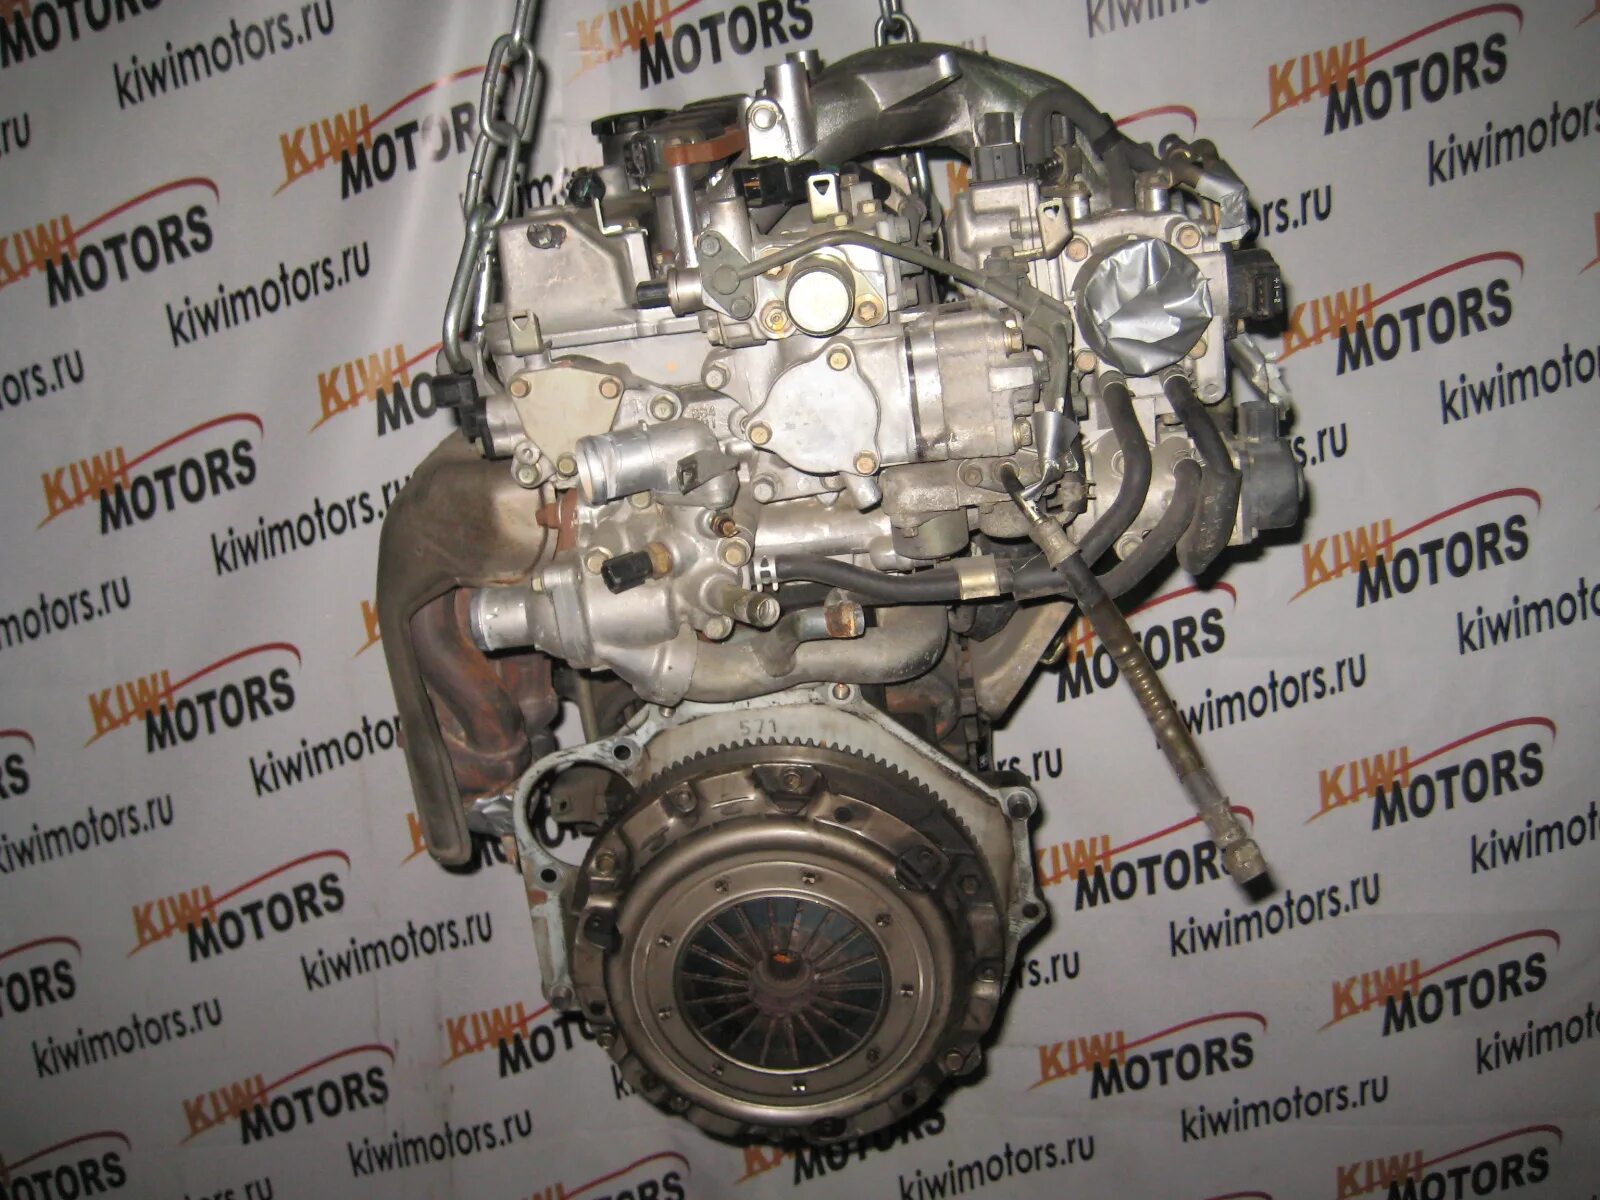 Двигатель Mitsubishi 2.4 4g64. Двигатель Митсубиси 4g64. Двигатель 4g64 Мицубиси 2.4. Двигатель Митсубиси Галант 2.4 4g64.